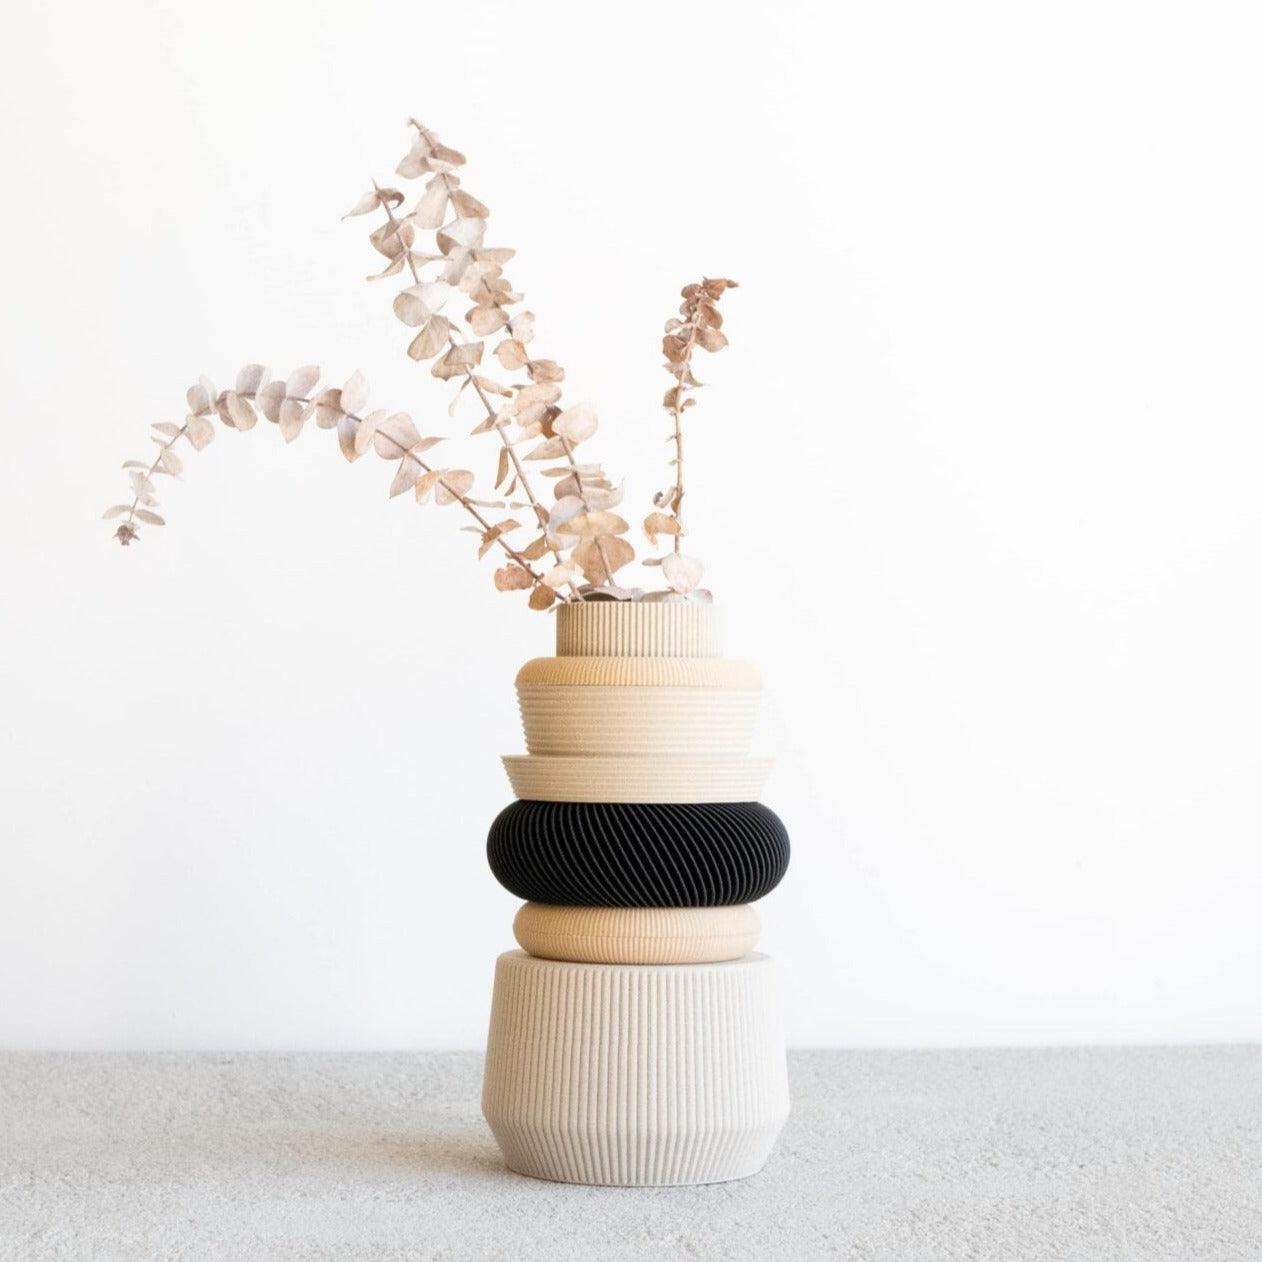 VENICE Modular Vase - Minimum Design 